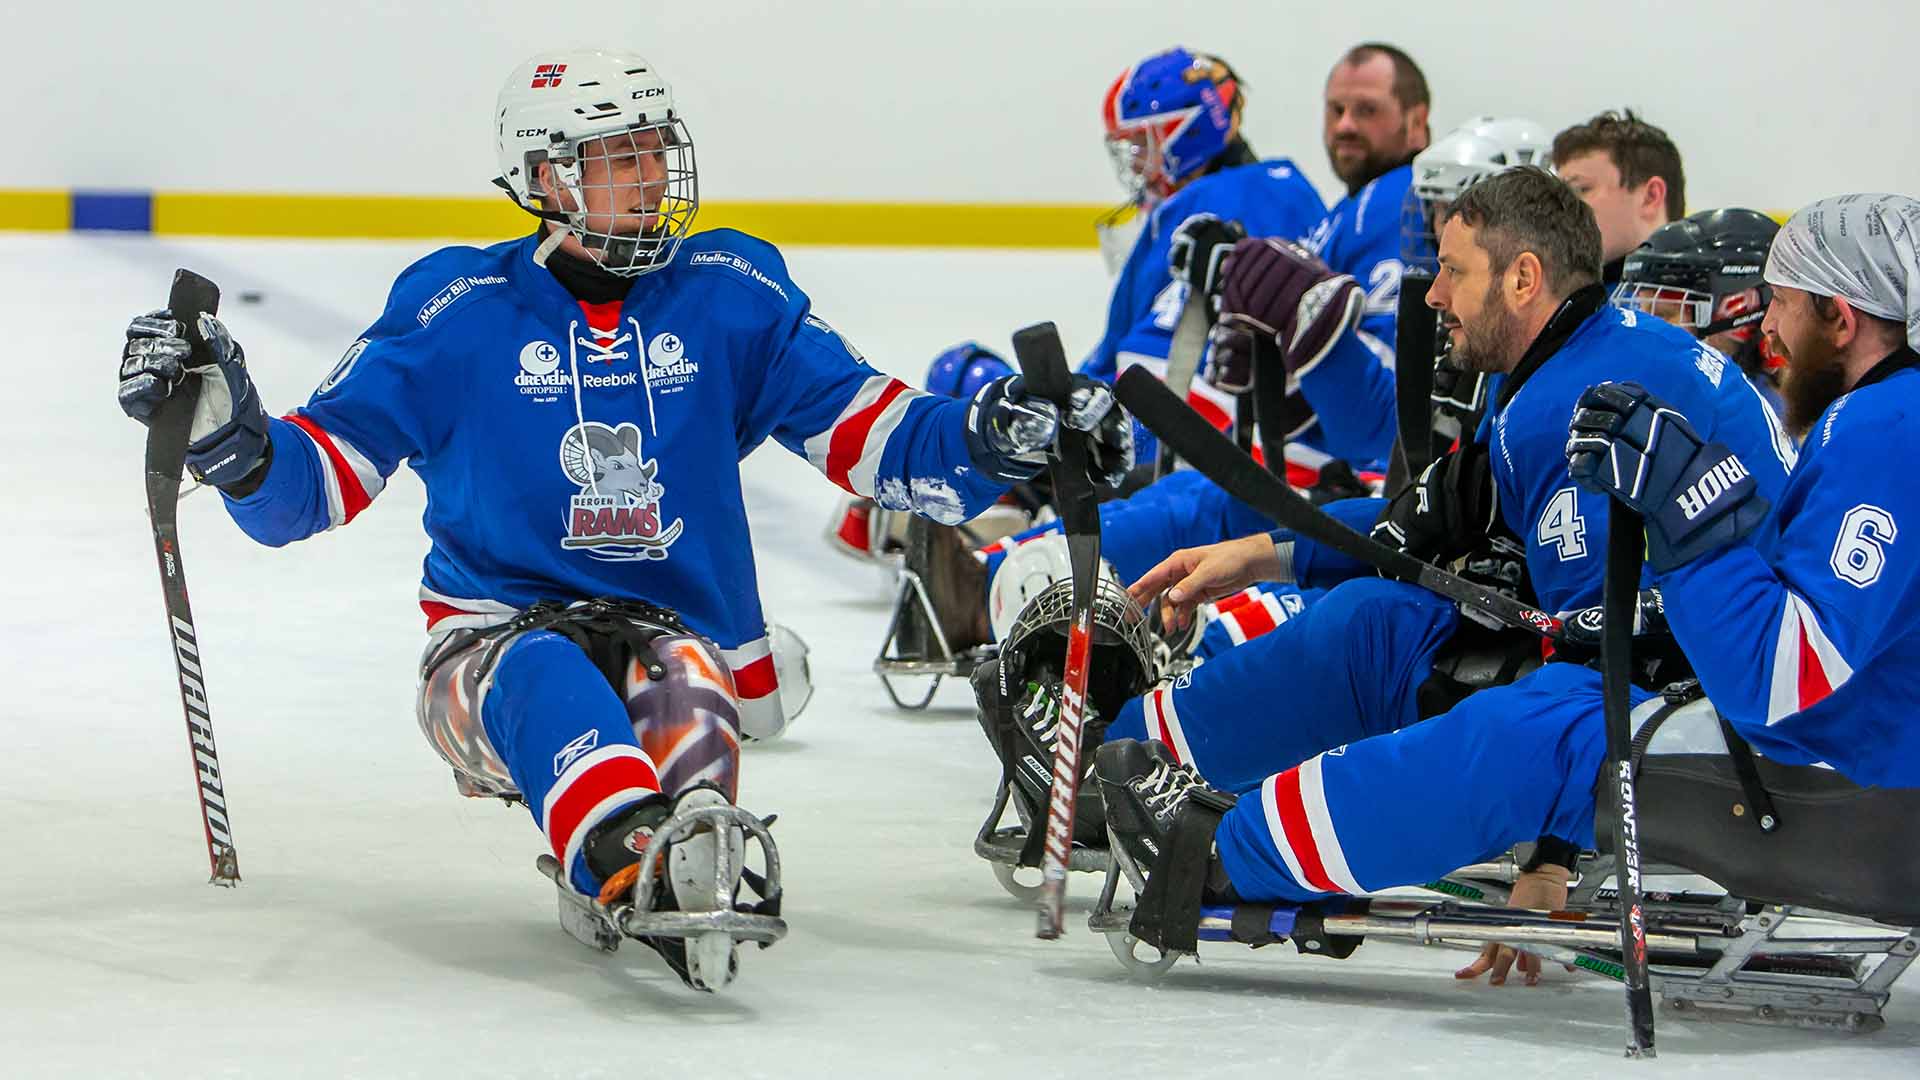 Idrettsforbundet beklager at regjeringen ikke styrker ordningen med aktivitetshjelpemidler til personer med funksjonsnedsettelser over 26 år. Foto: Tove Lise Mossestad